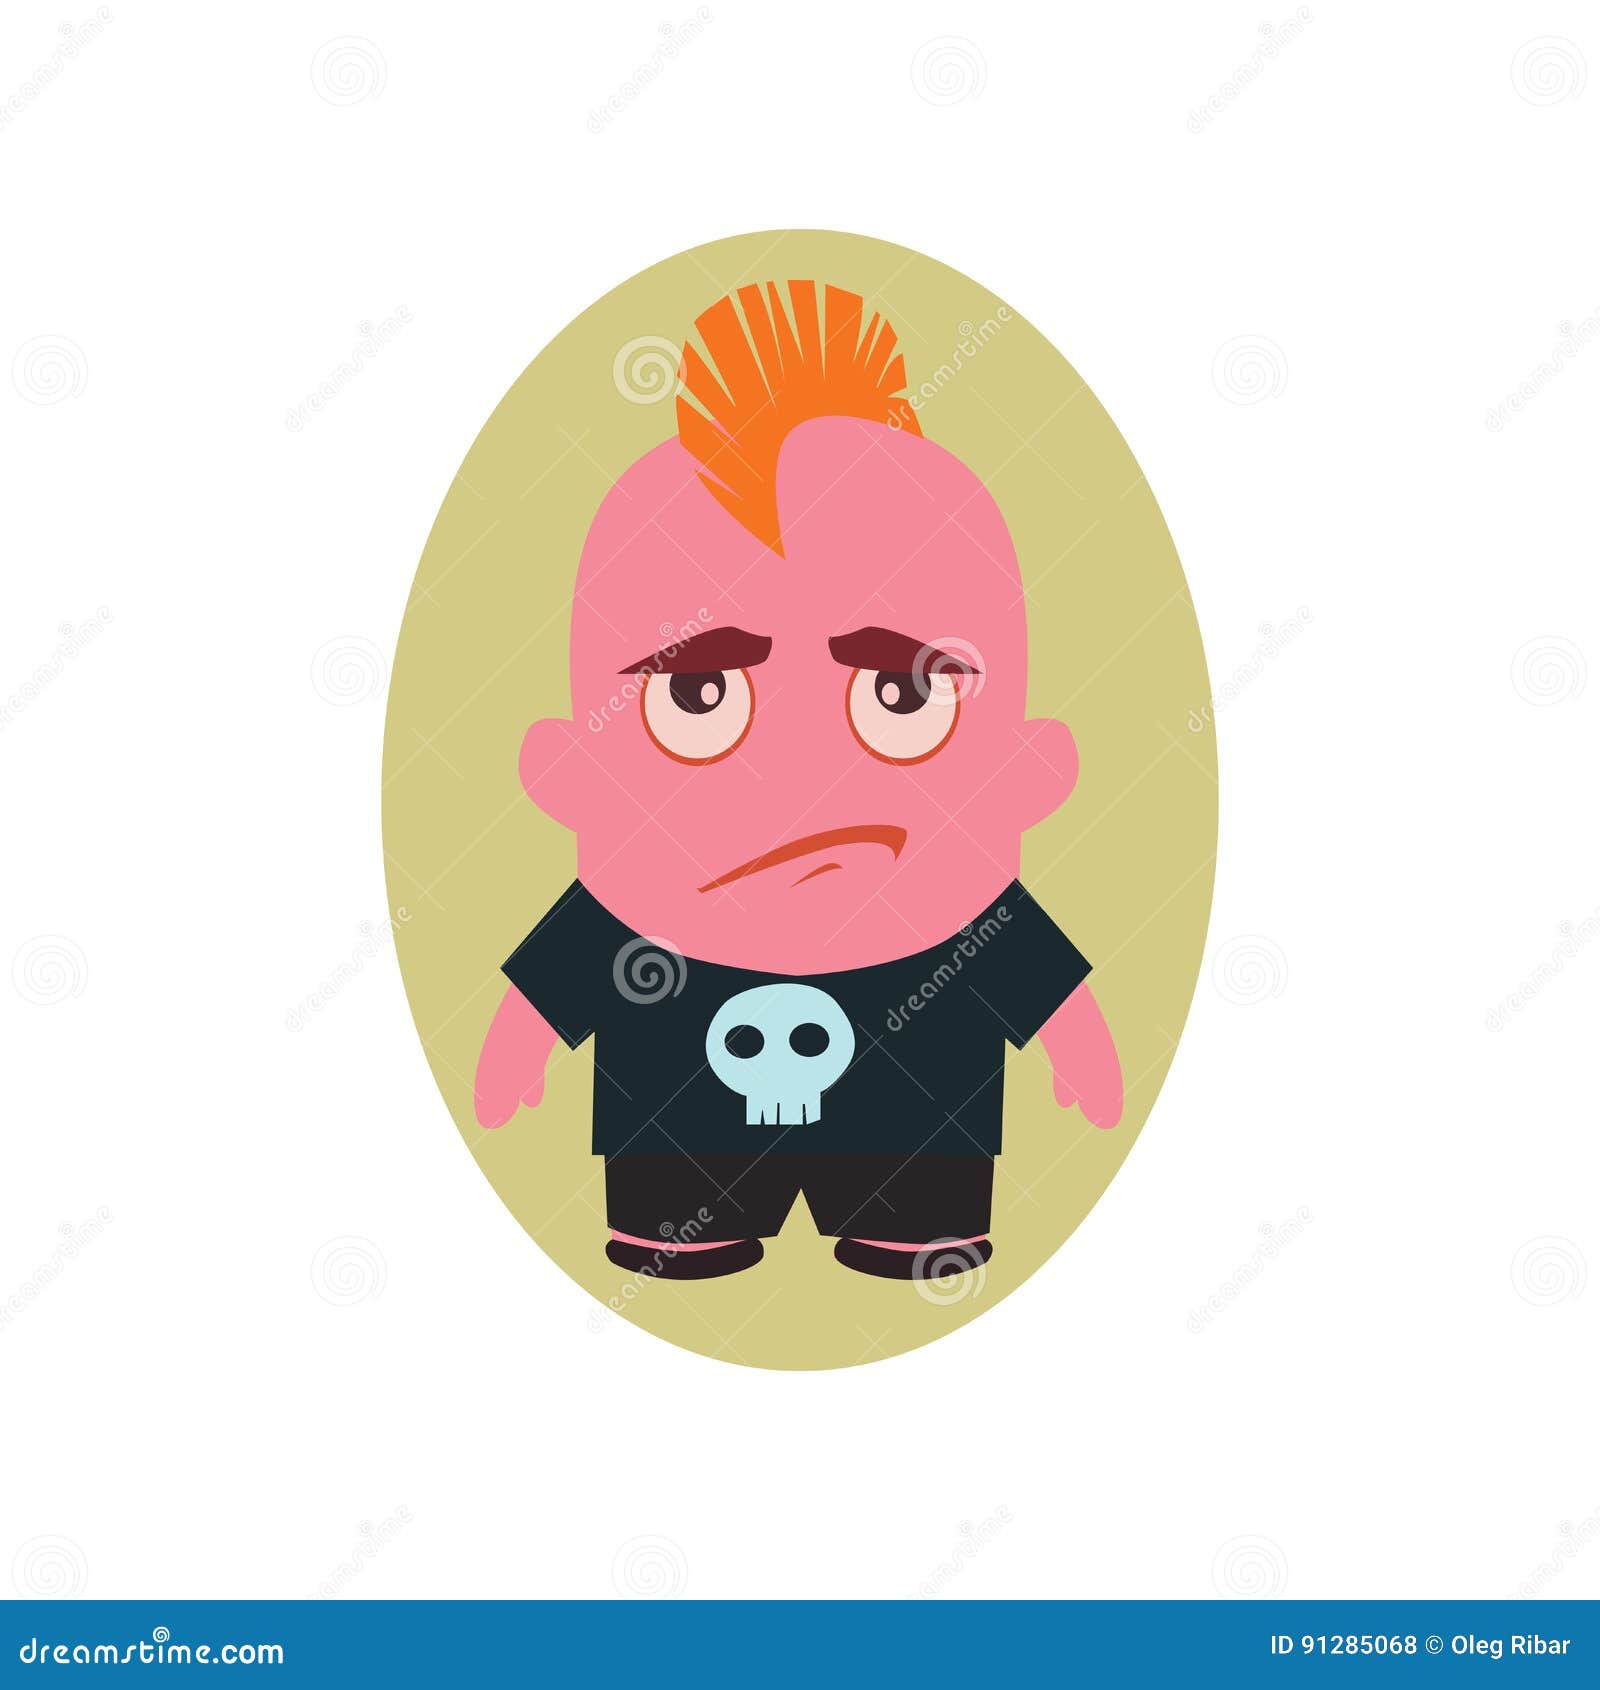 unhappy person cartoon